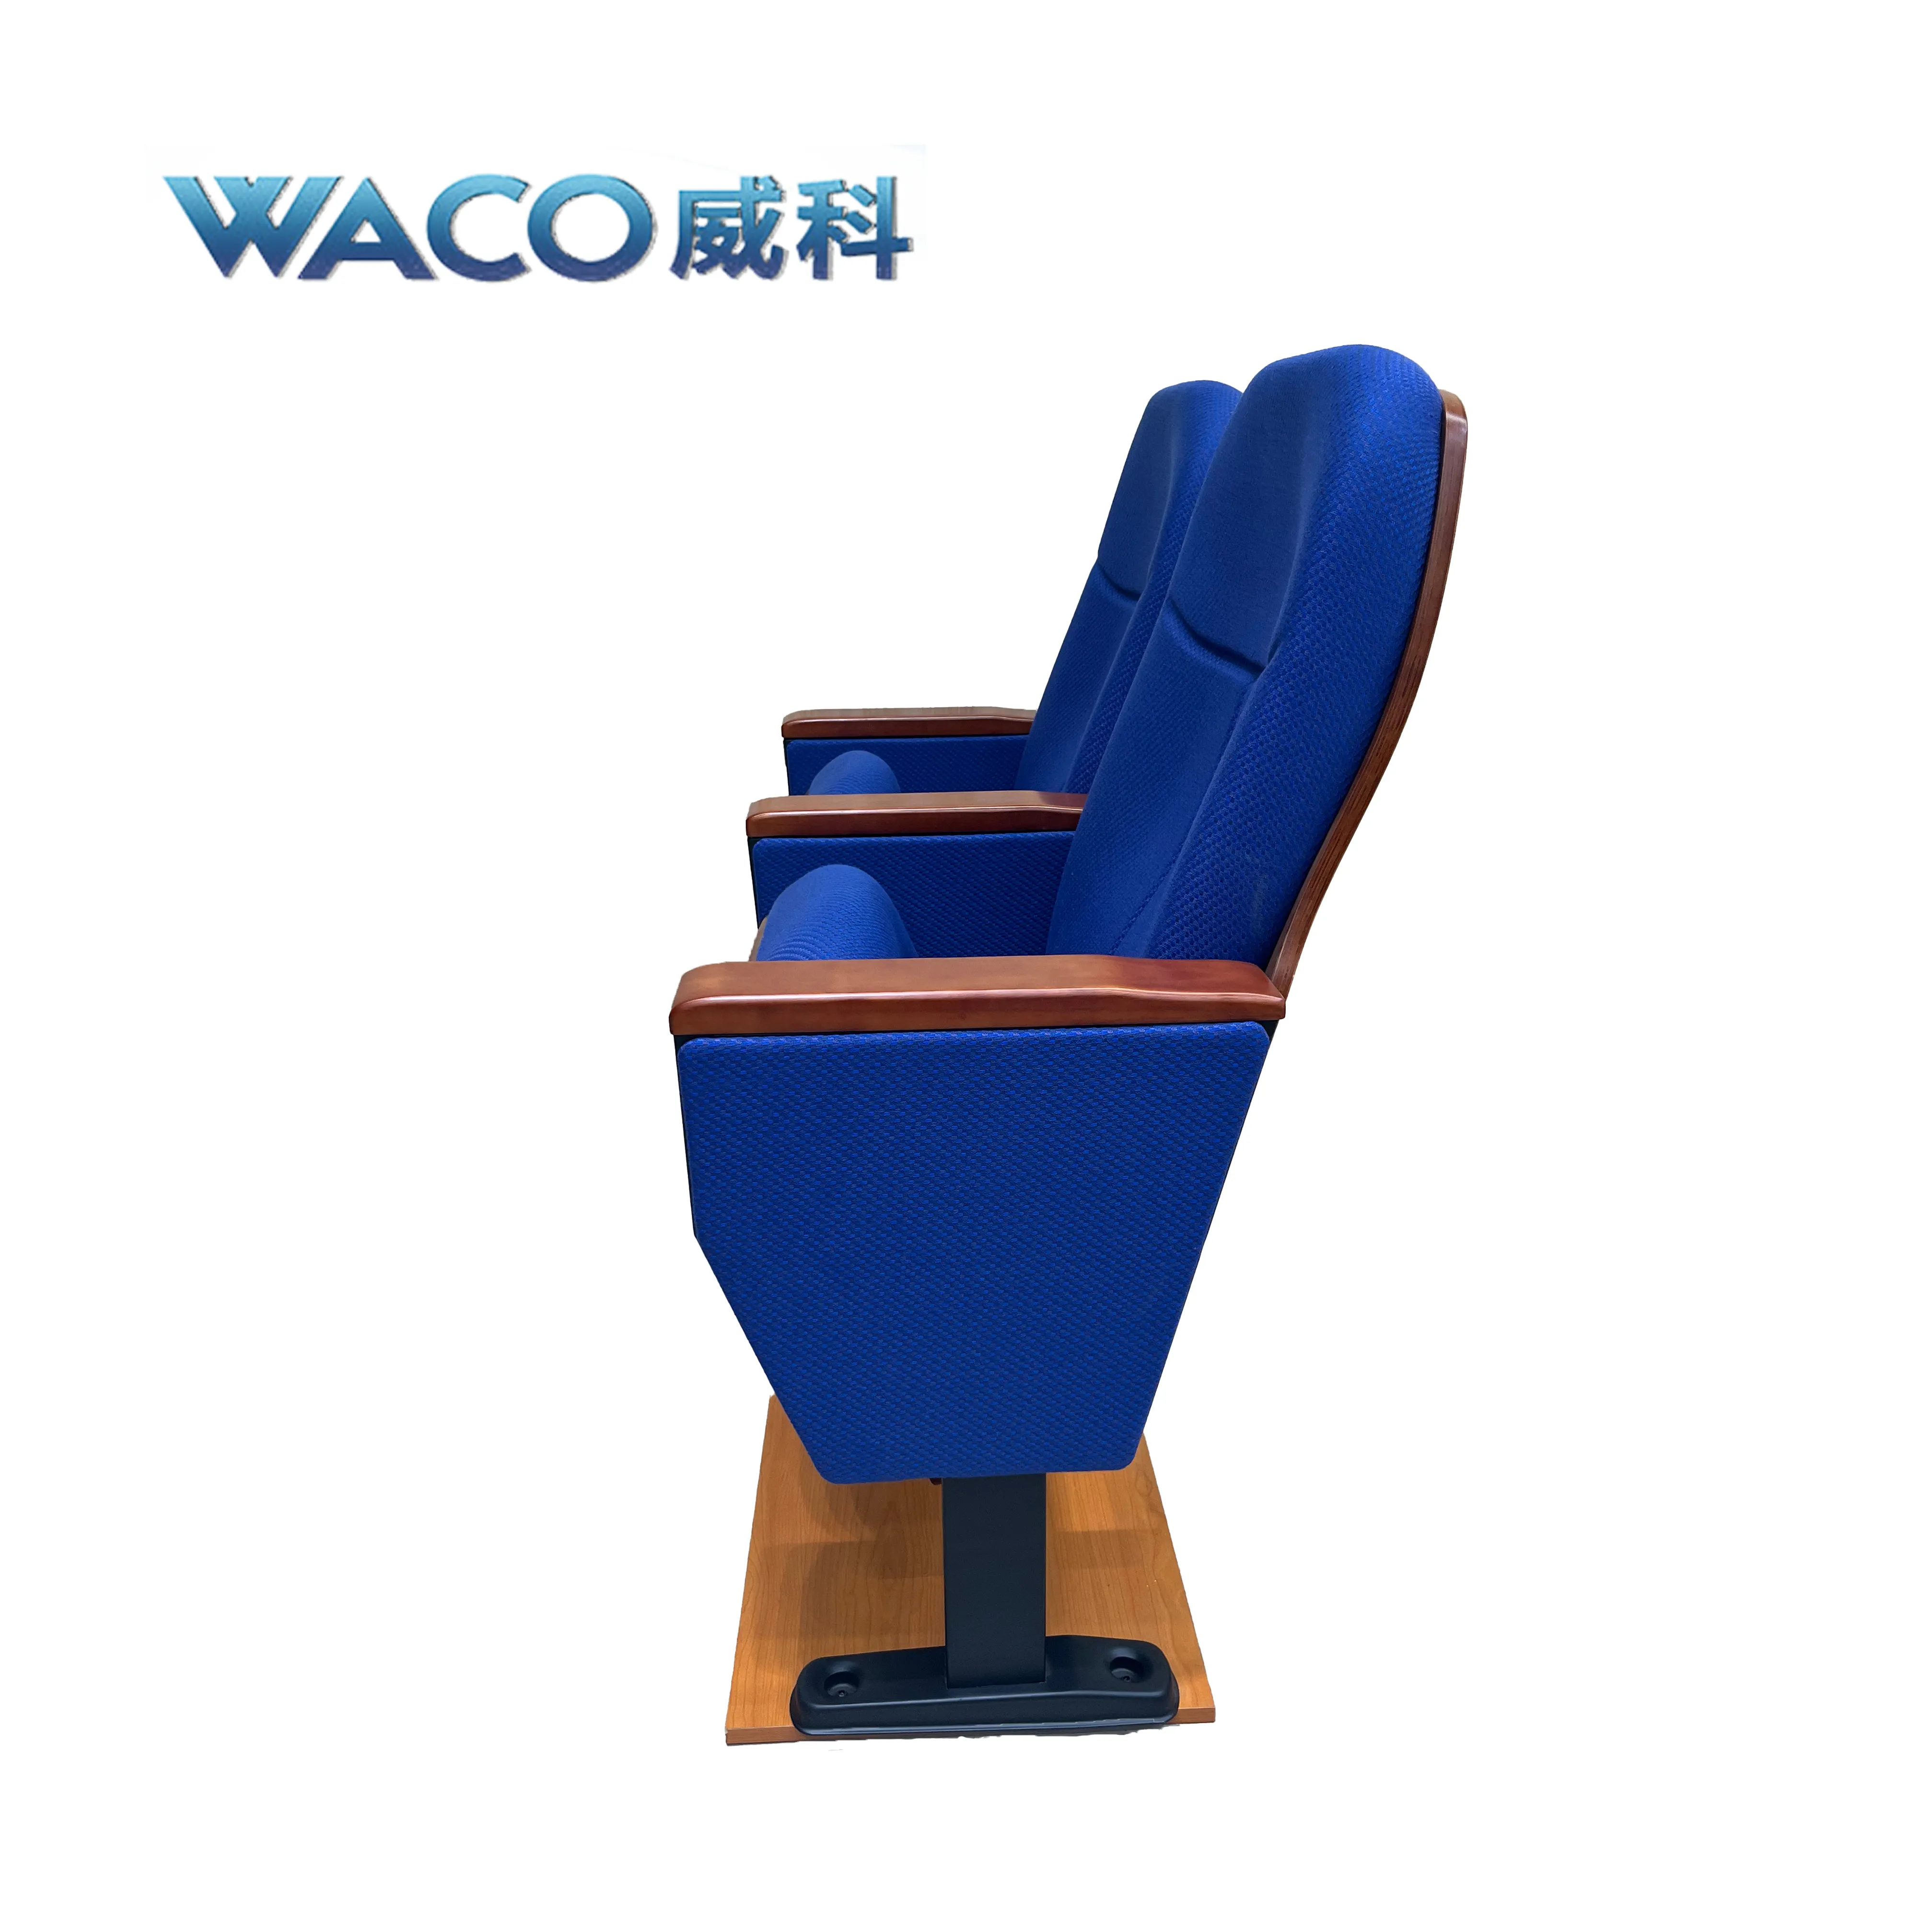 2022 مصنع رخيصة بالجملة الأزرق طوي كرسي قاعة اجتماعات كراسي صالات سينما كرسي